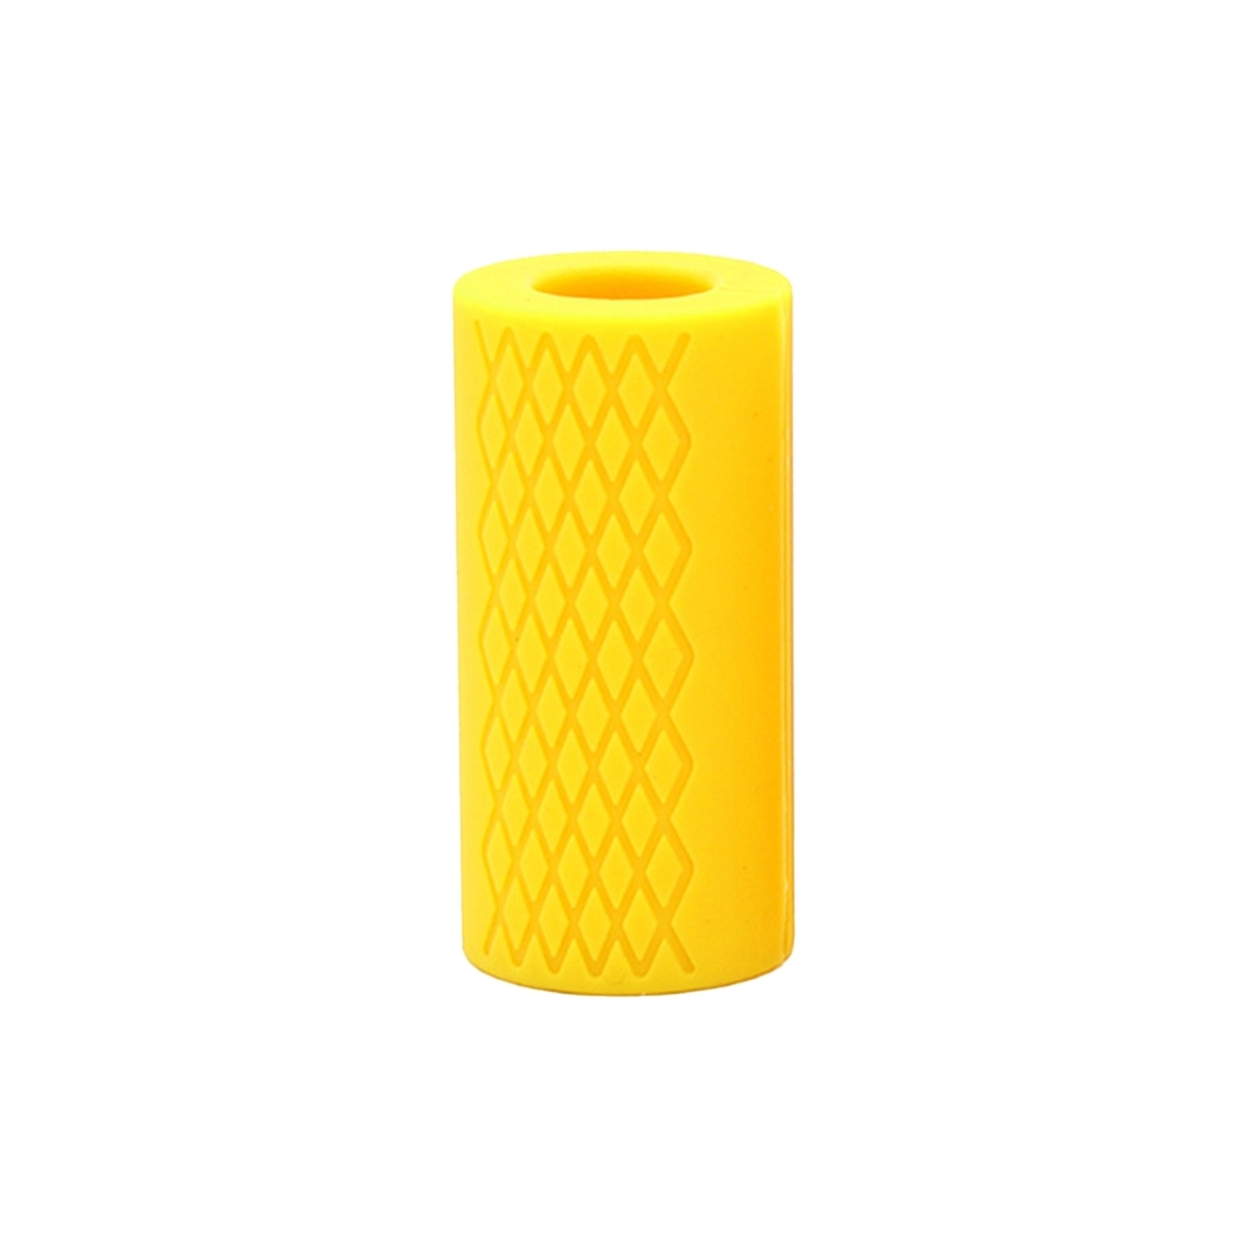 xFitness Thick Grip Bar Standard 2.0 Yellow Convert Bar into 2.15” Fat Bar 